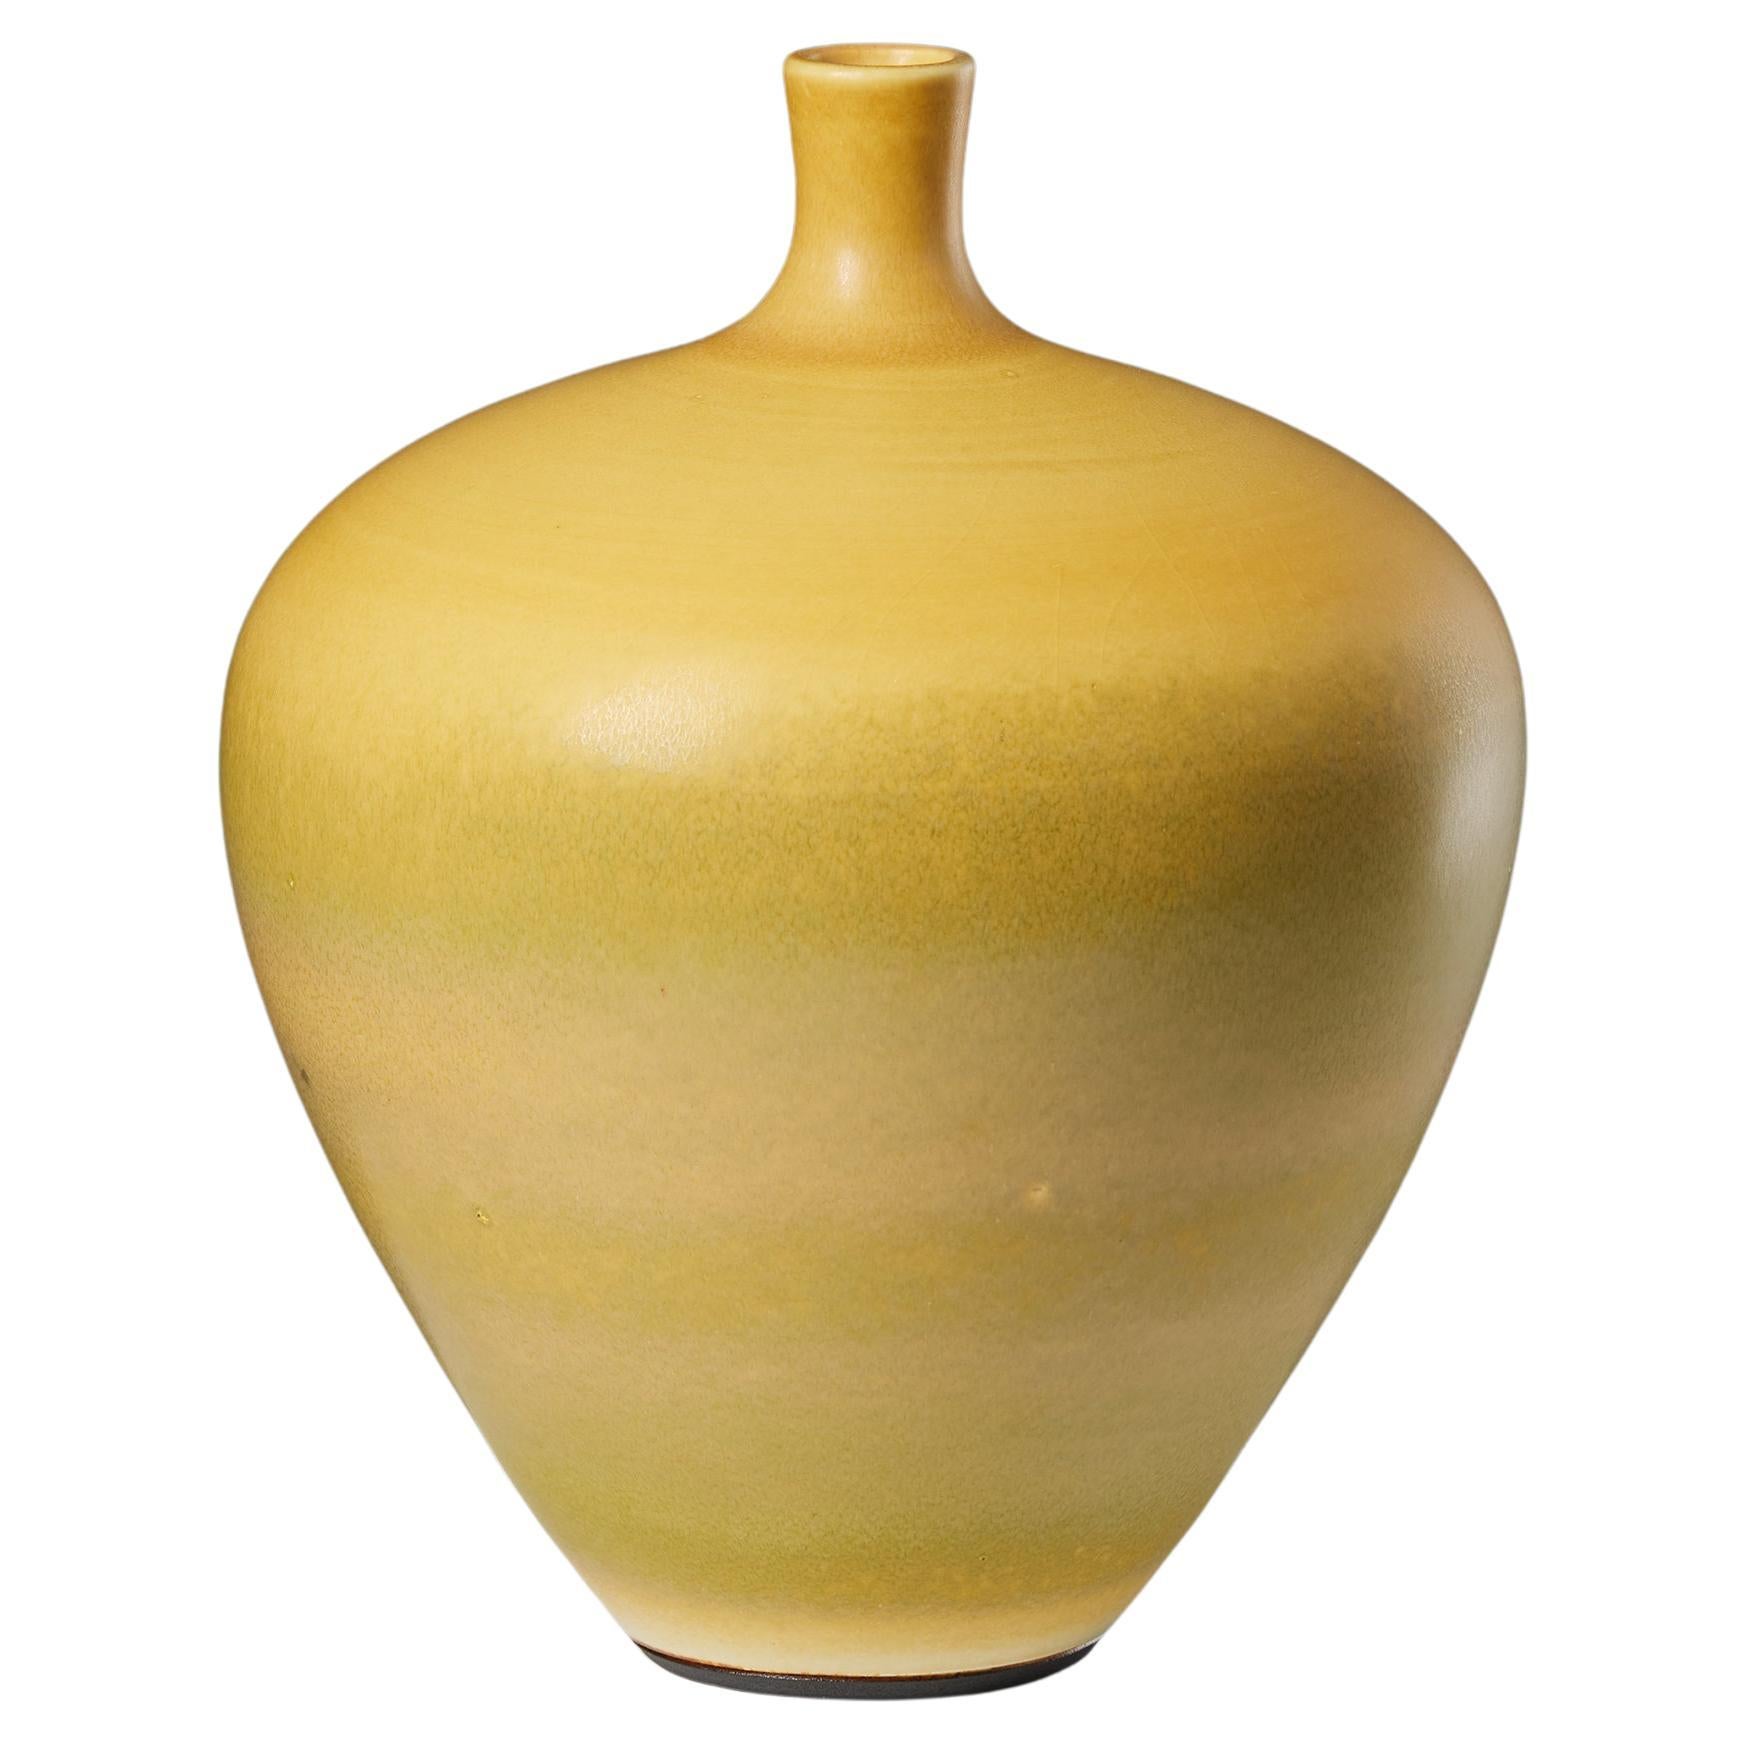 Die Vase wurde von Berndt Friberg für Gustavsberg entworfen, Schweden, 1963